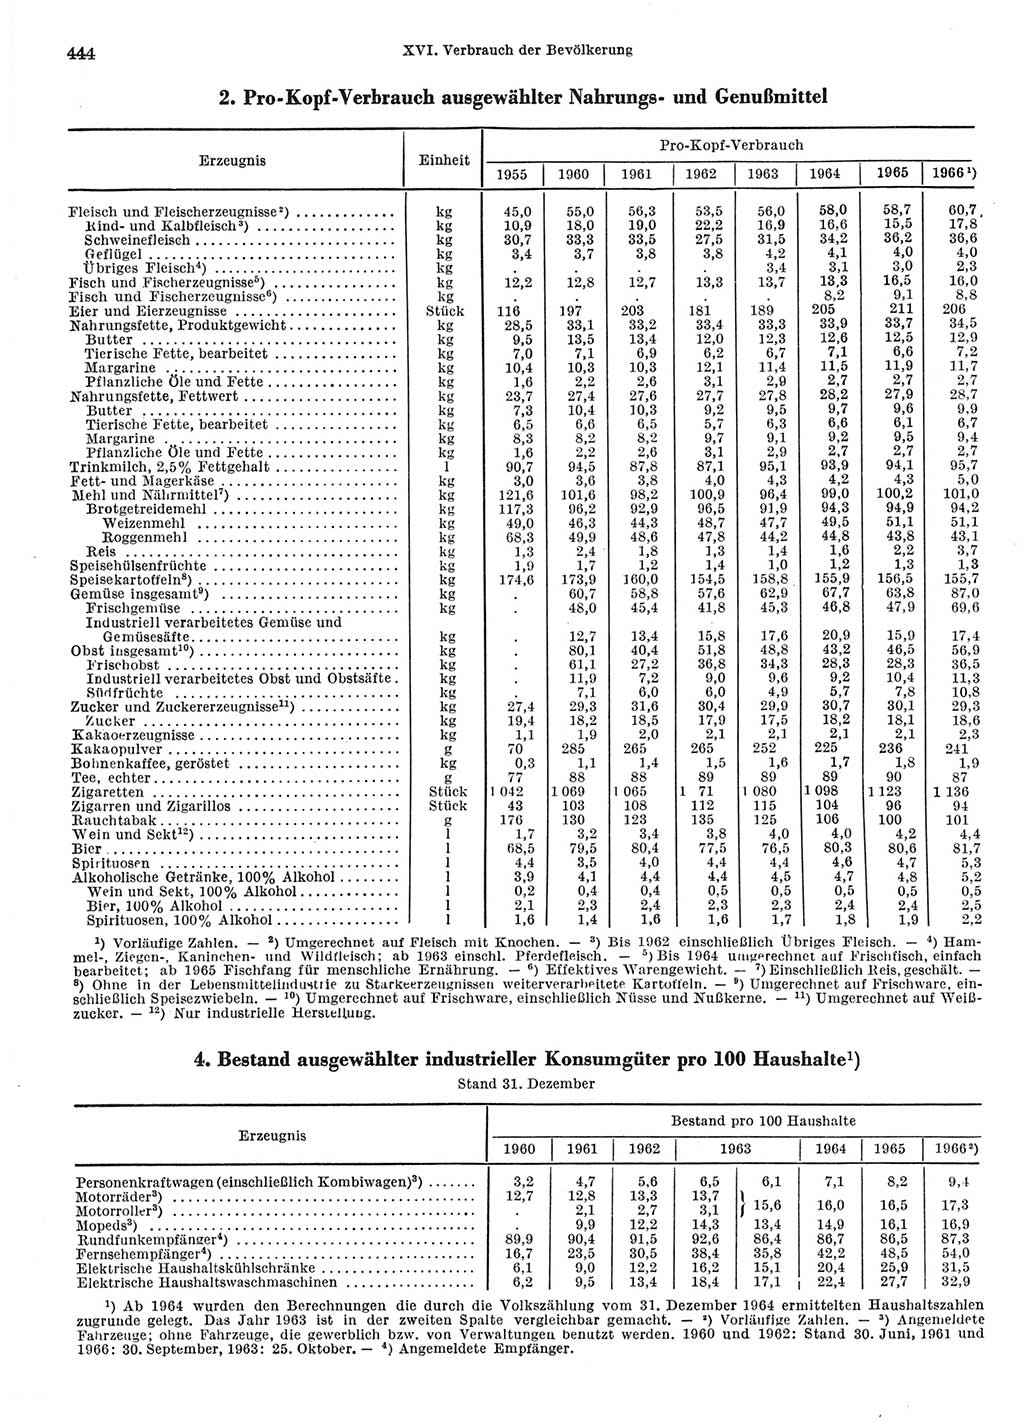 Statistisches Jahrbuch der Deutschen Demokratischen Republik (DDR) 1967, Seite 444 (Stat. Jb. DDR 1967, S. 444)